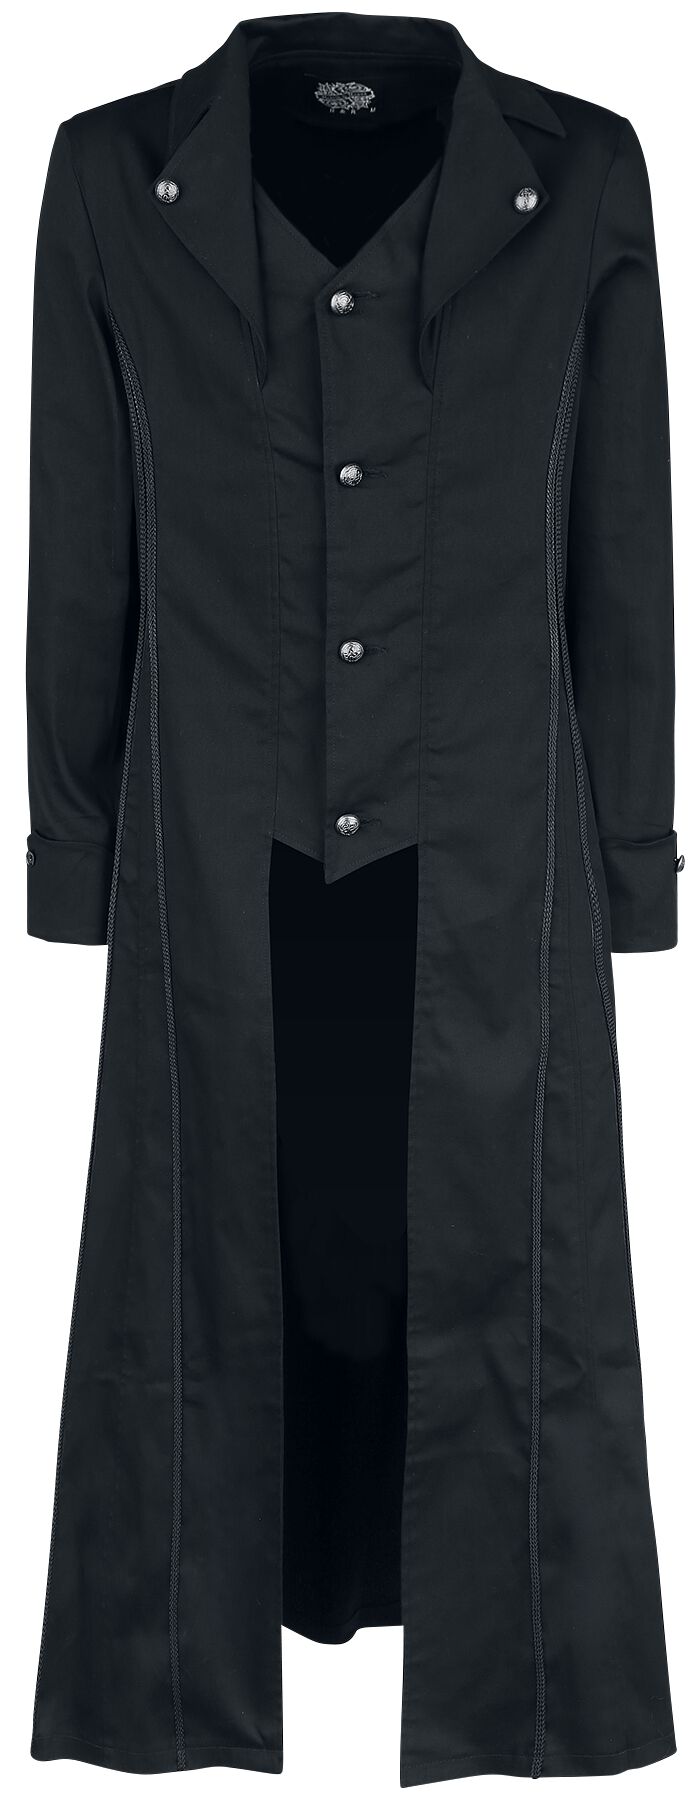 H&R London - Gothic Militärmantel - Black Classic Coat - S bis XXL - für Männer - Größe M - schwarz